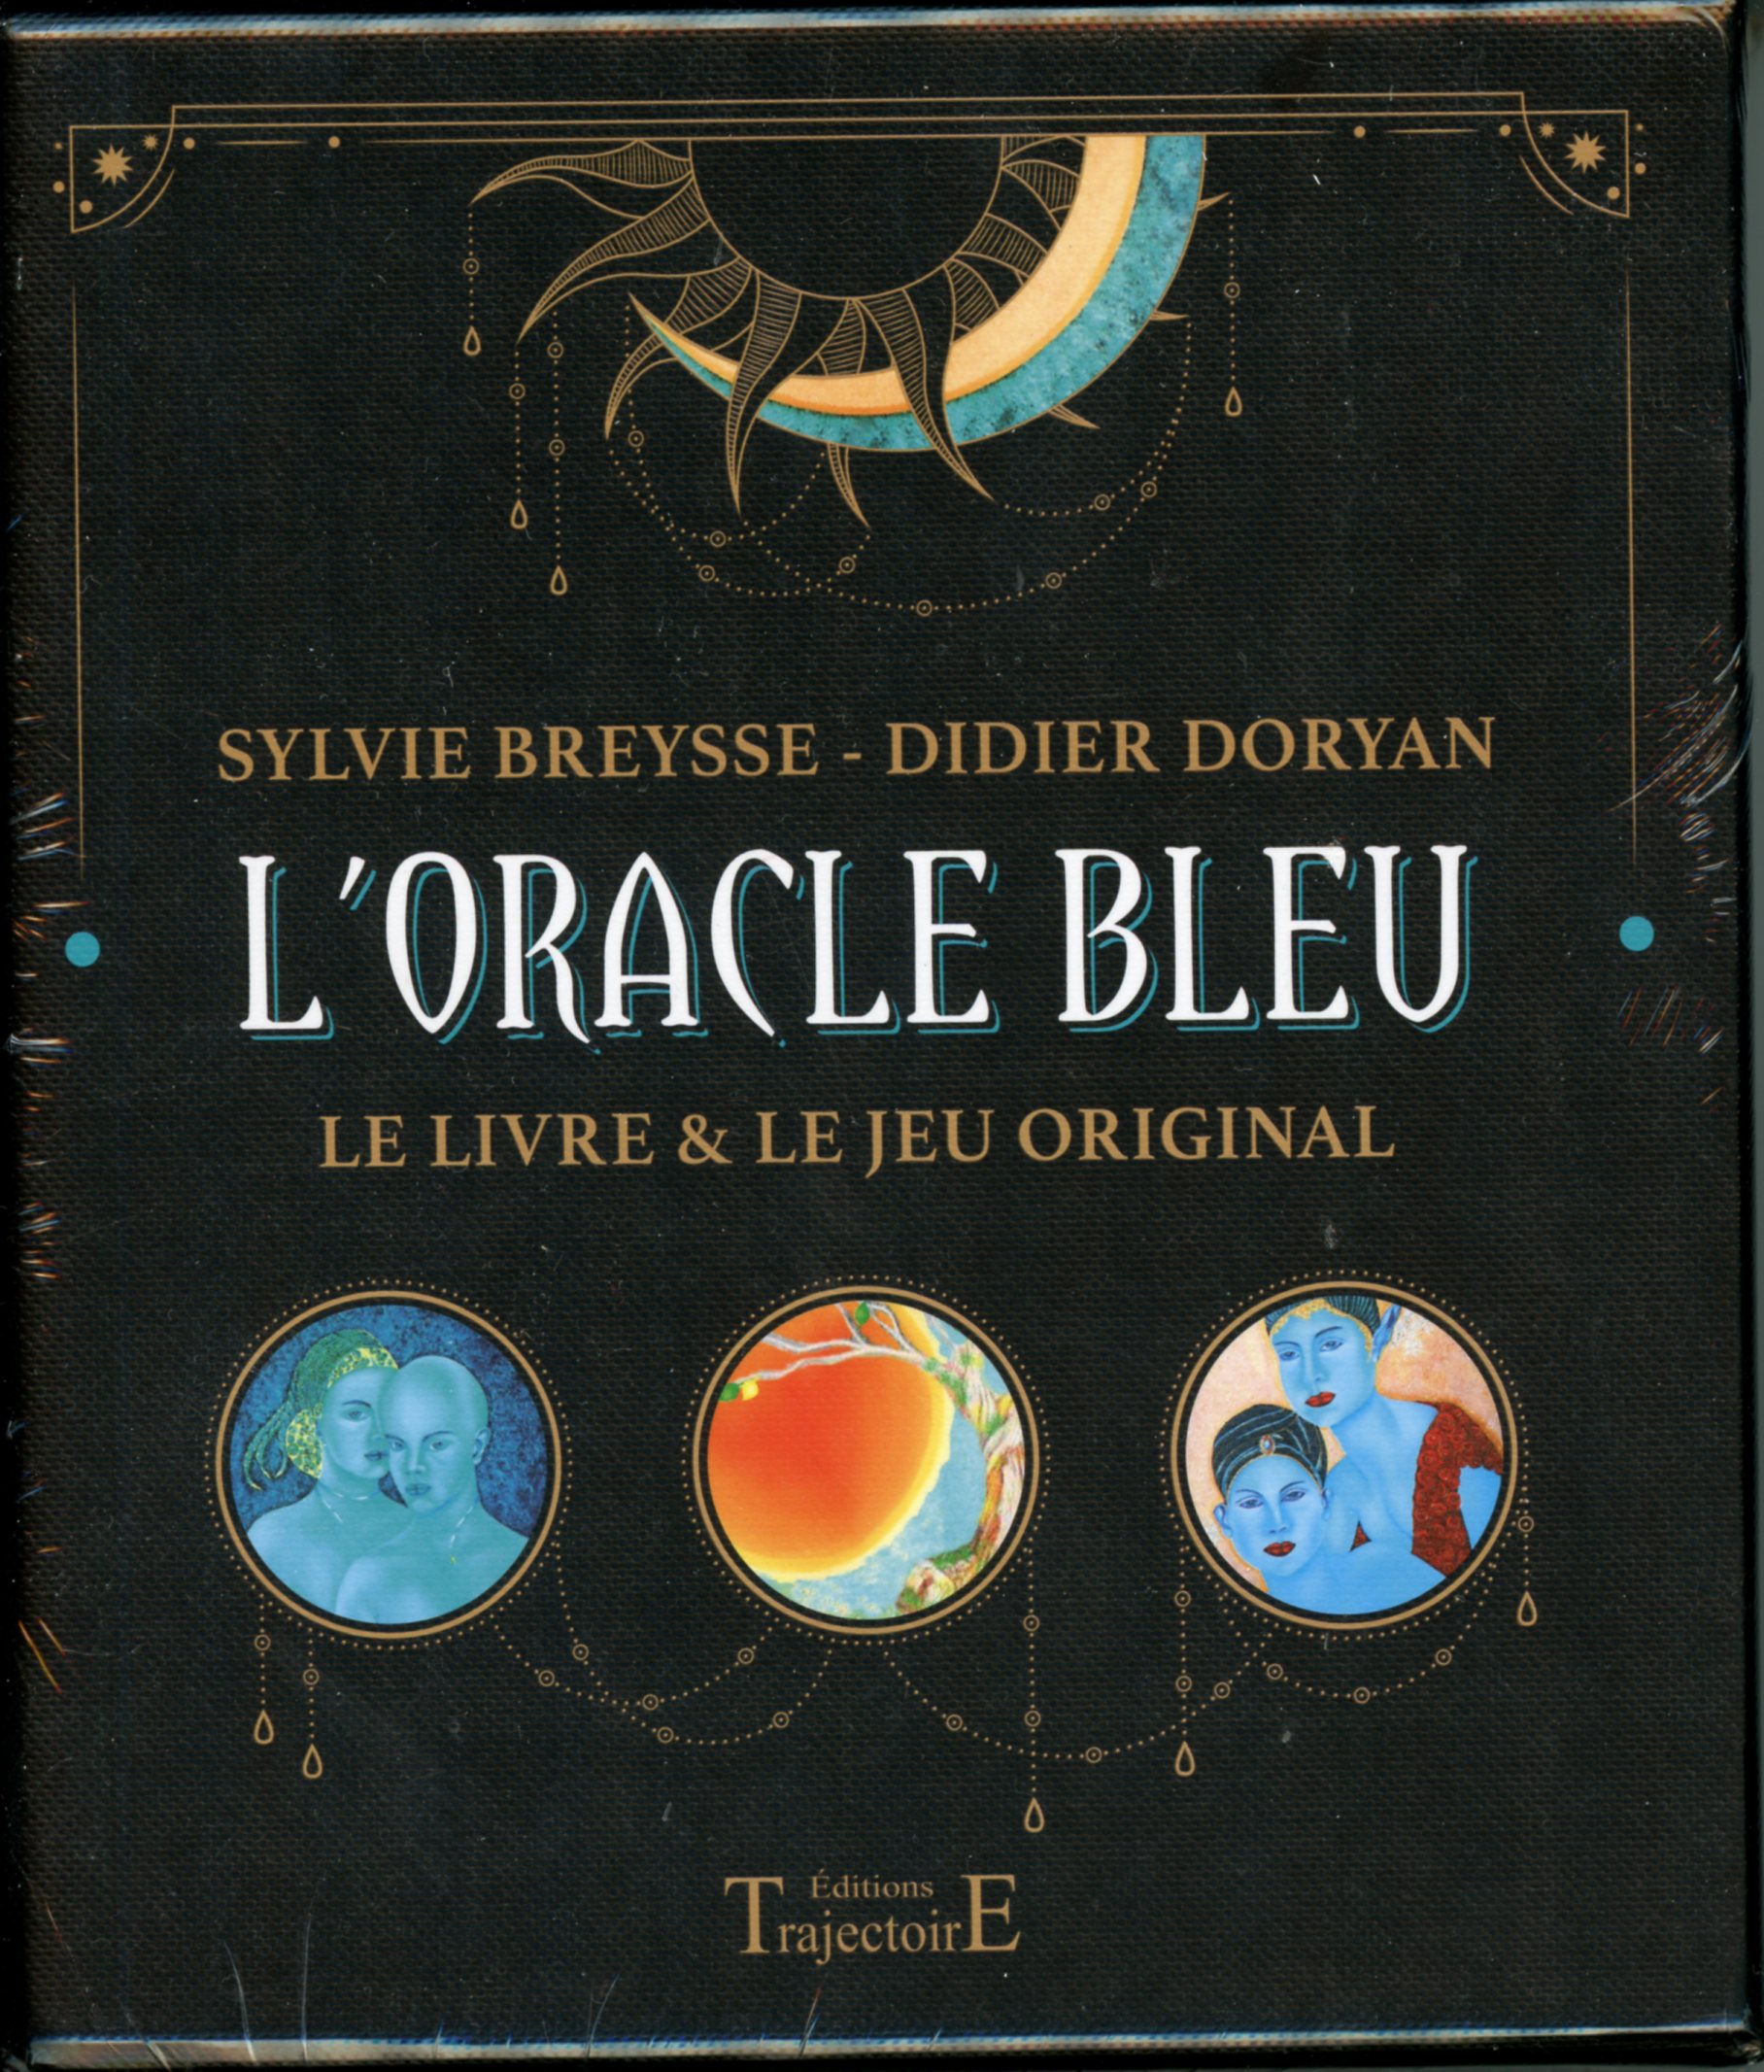 L\'ORACLE BLEU - SYLVIE BREYSSE - DIDIER DORVAN - LE LIVRE & LE JEU ORIGINAL